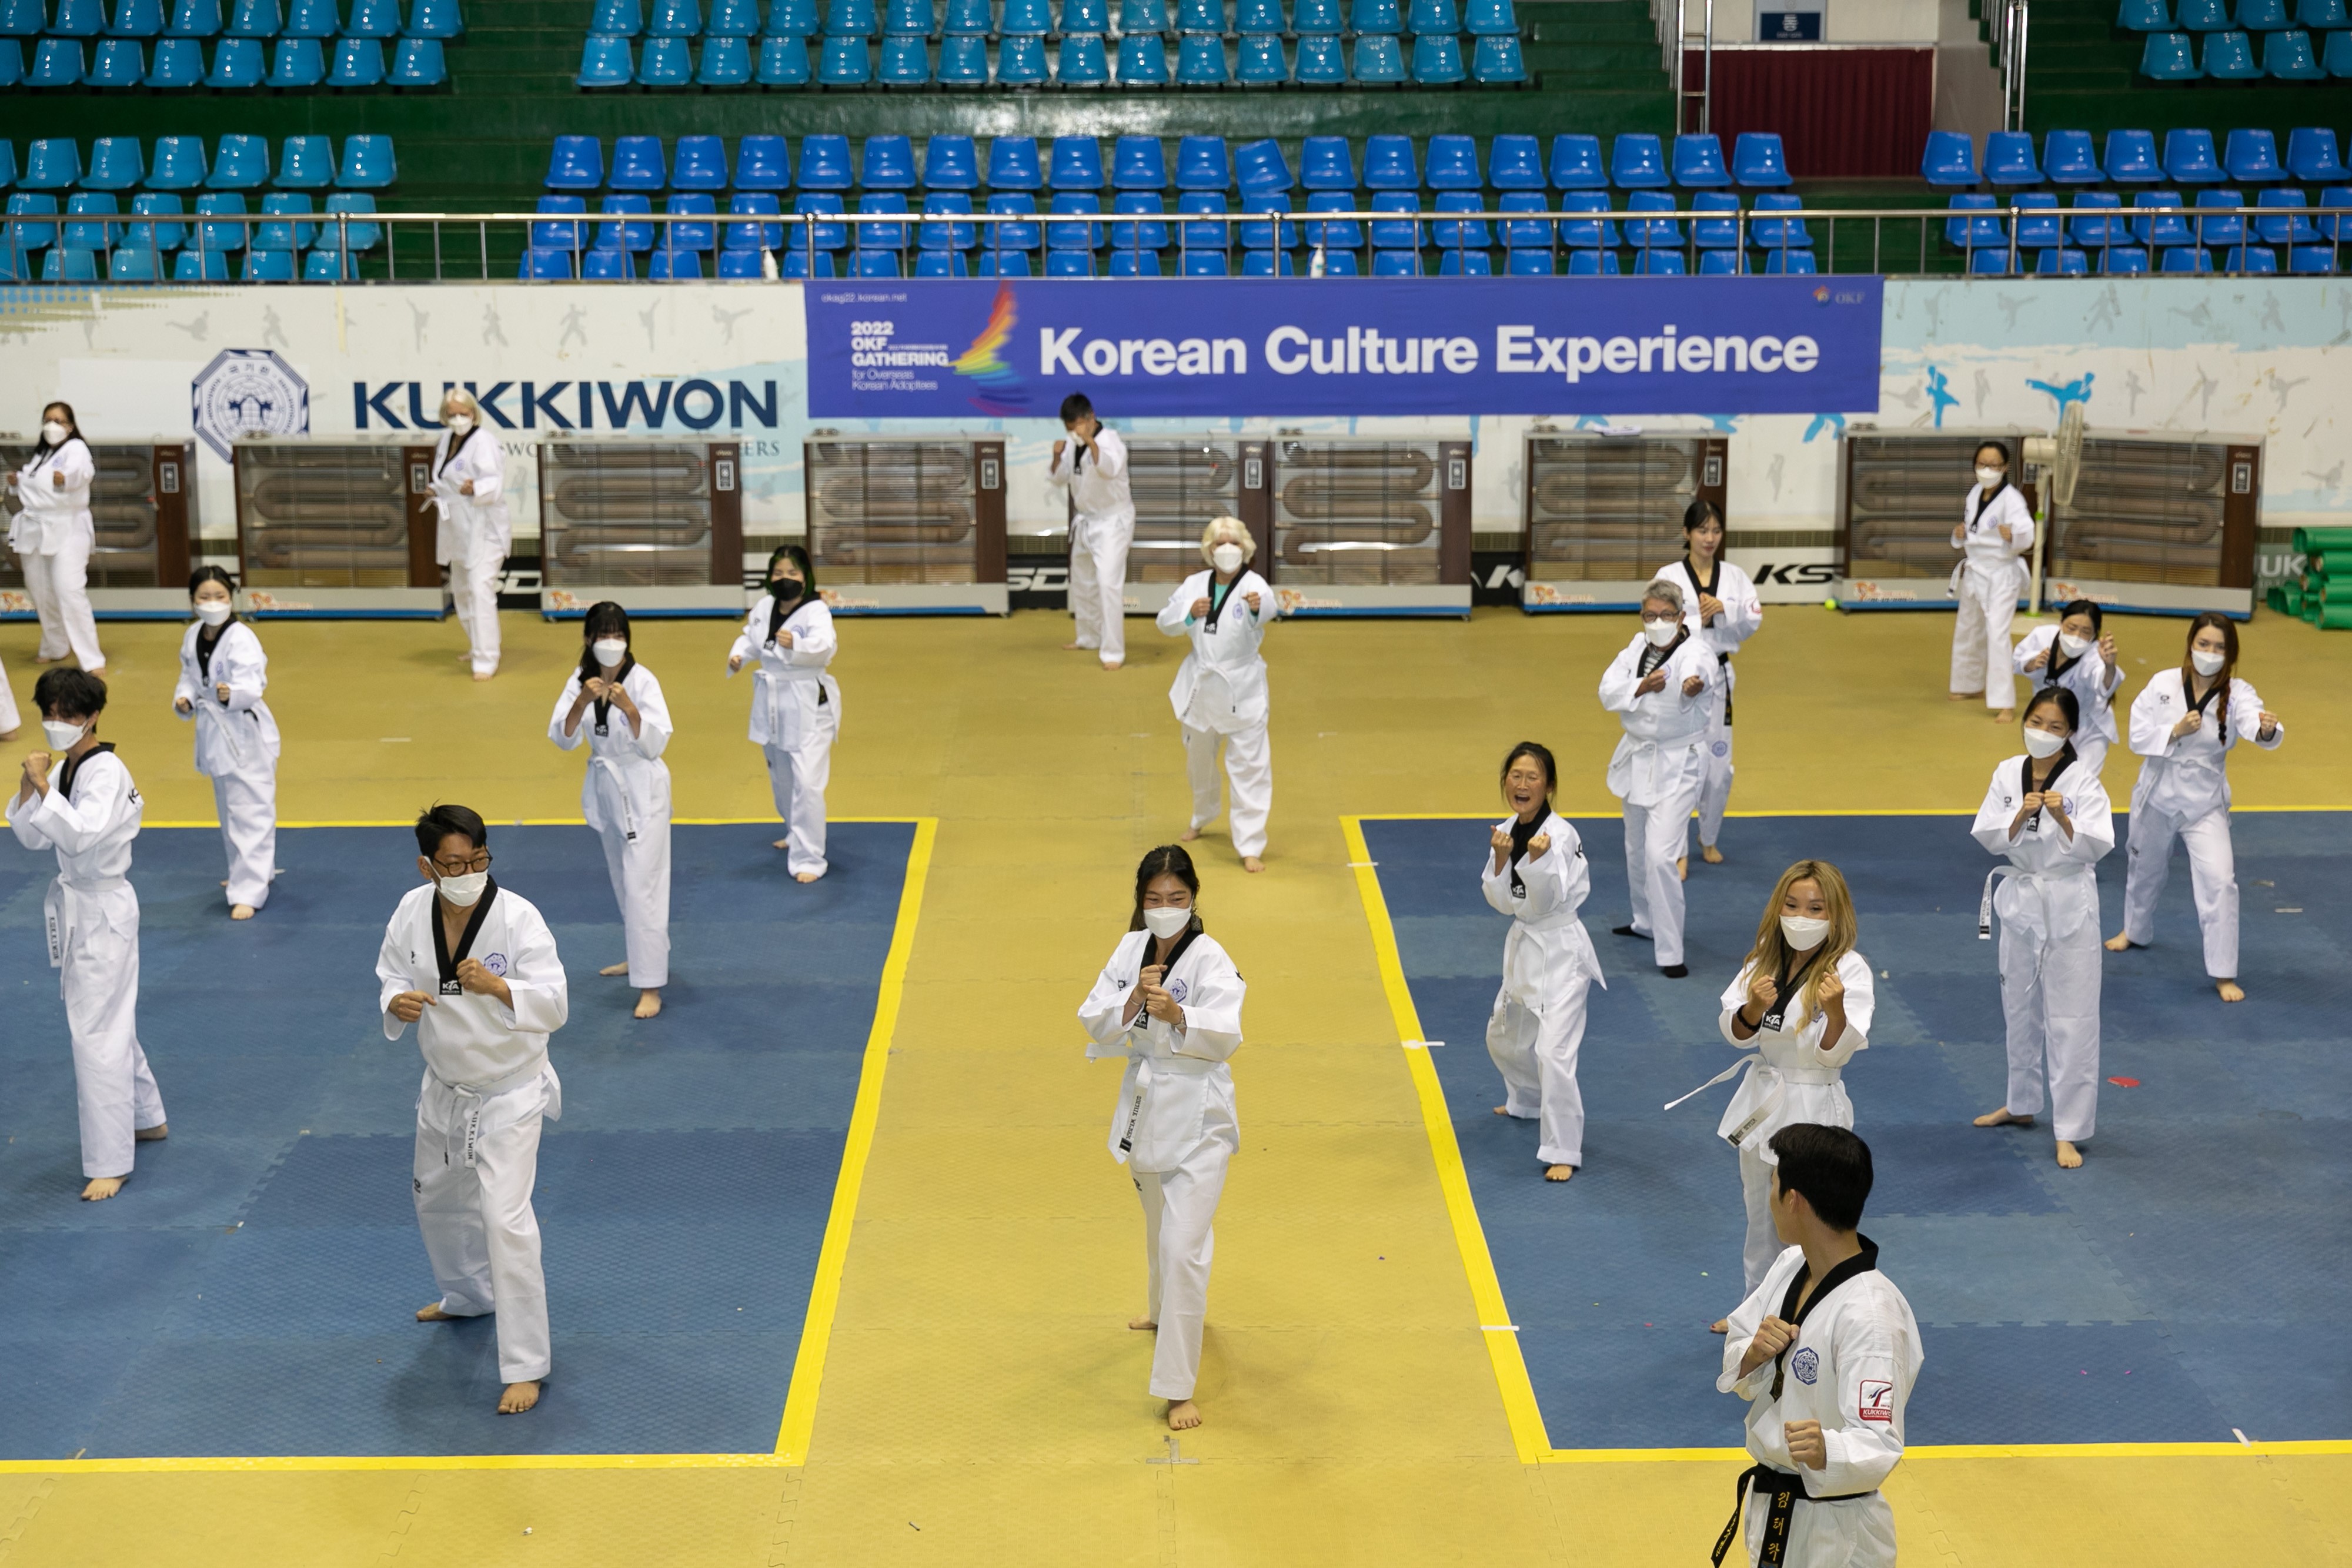 [Опыт корейской культуры | K-Sport] Усыновленные корейские дети учатся духу и мужеству нации, изучая тхэквондо, традиционное корейское боевое искусство